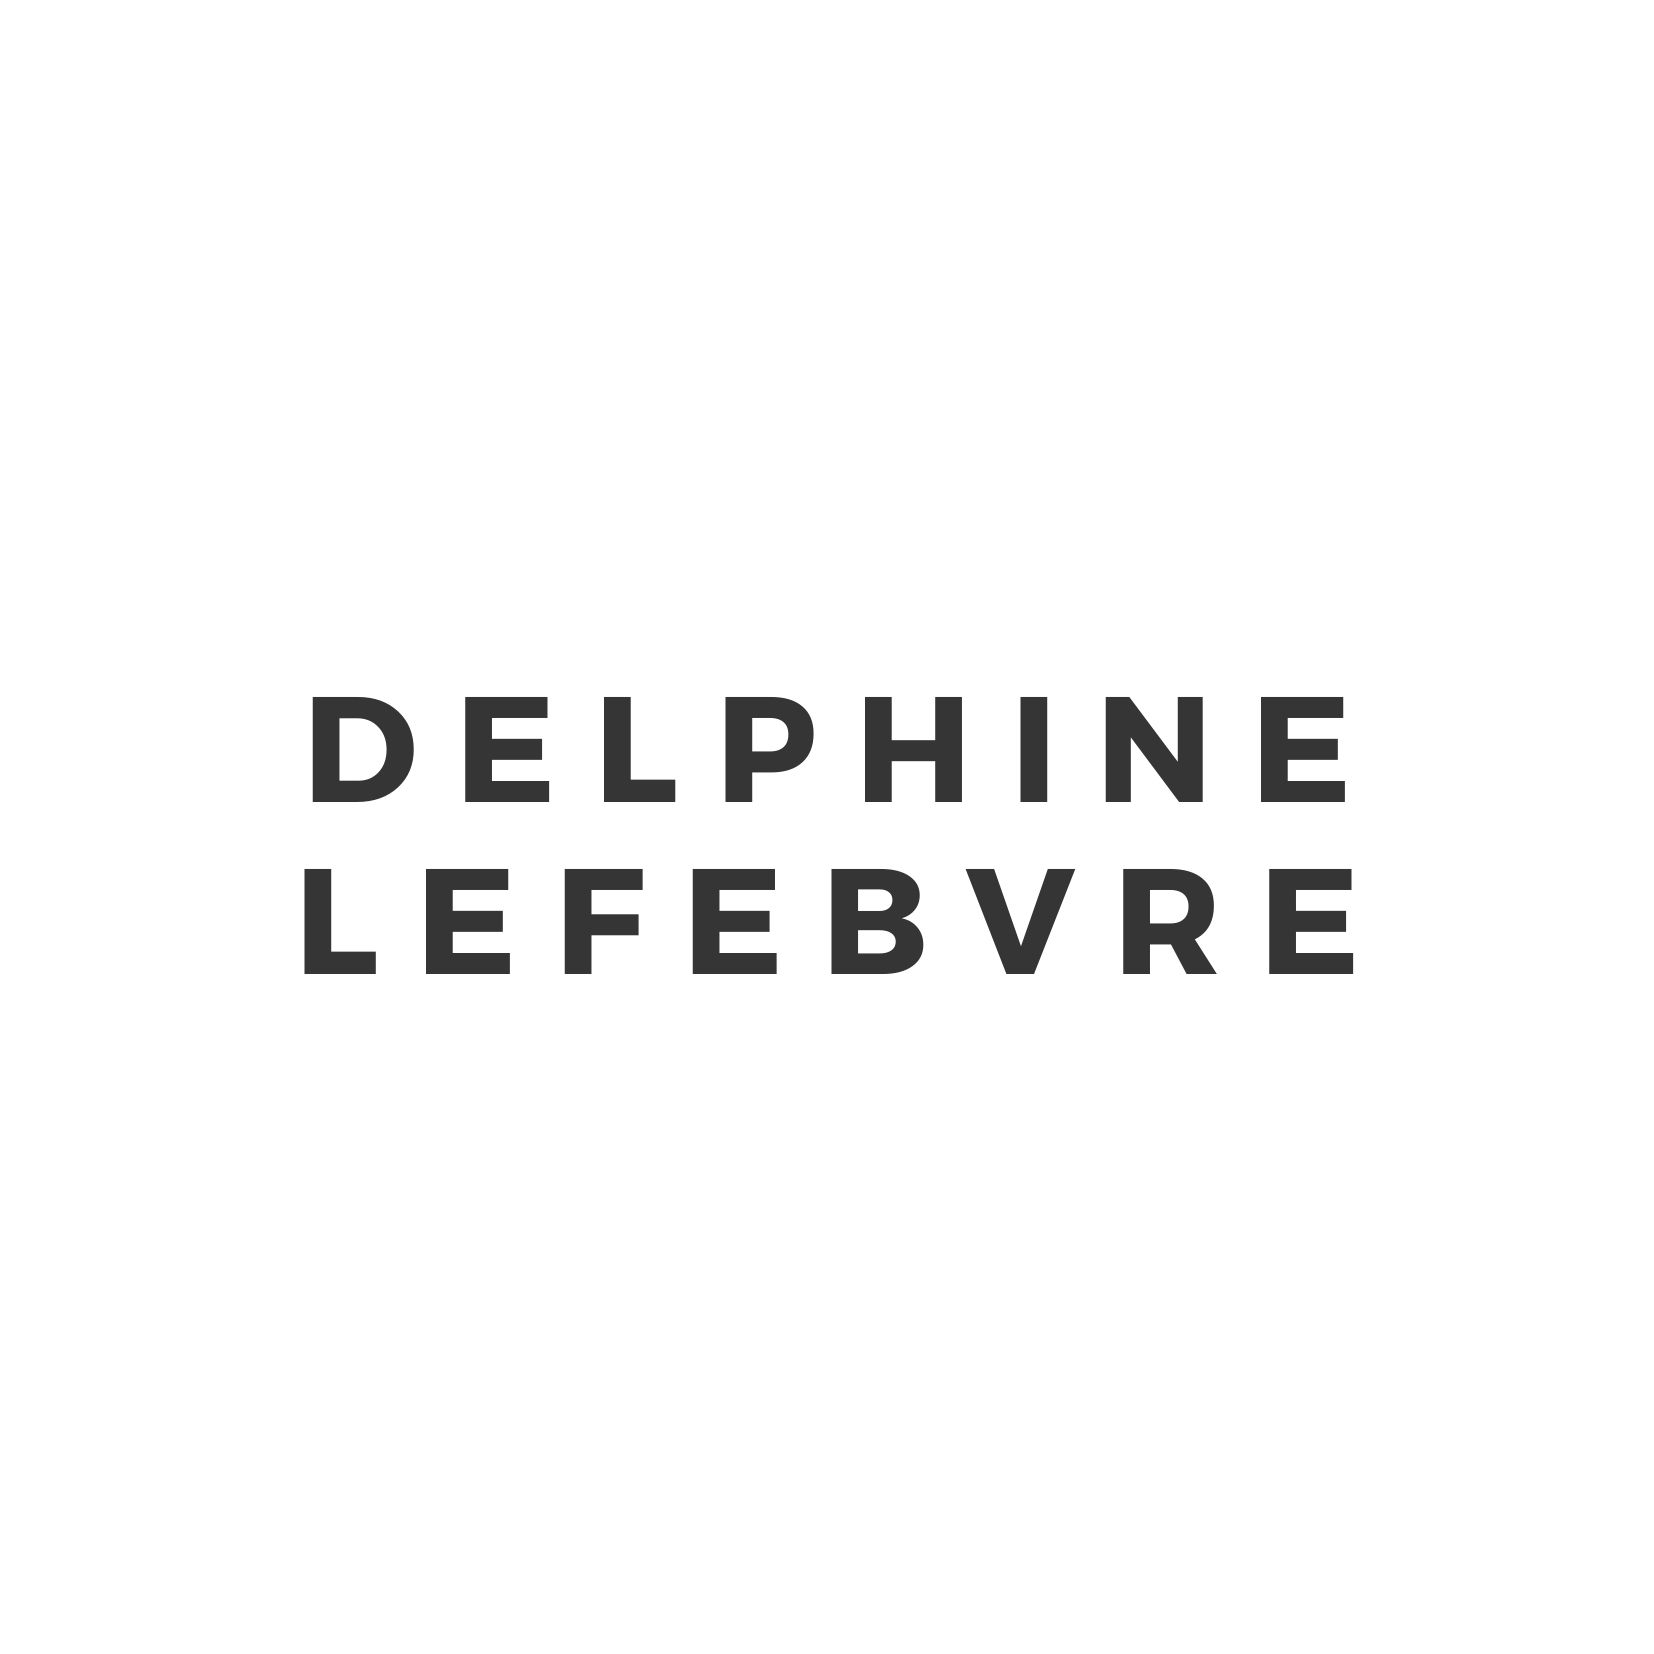 Delphine Lefebvre